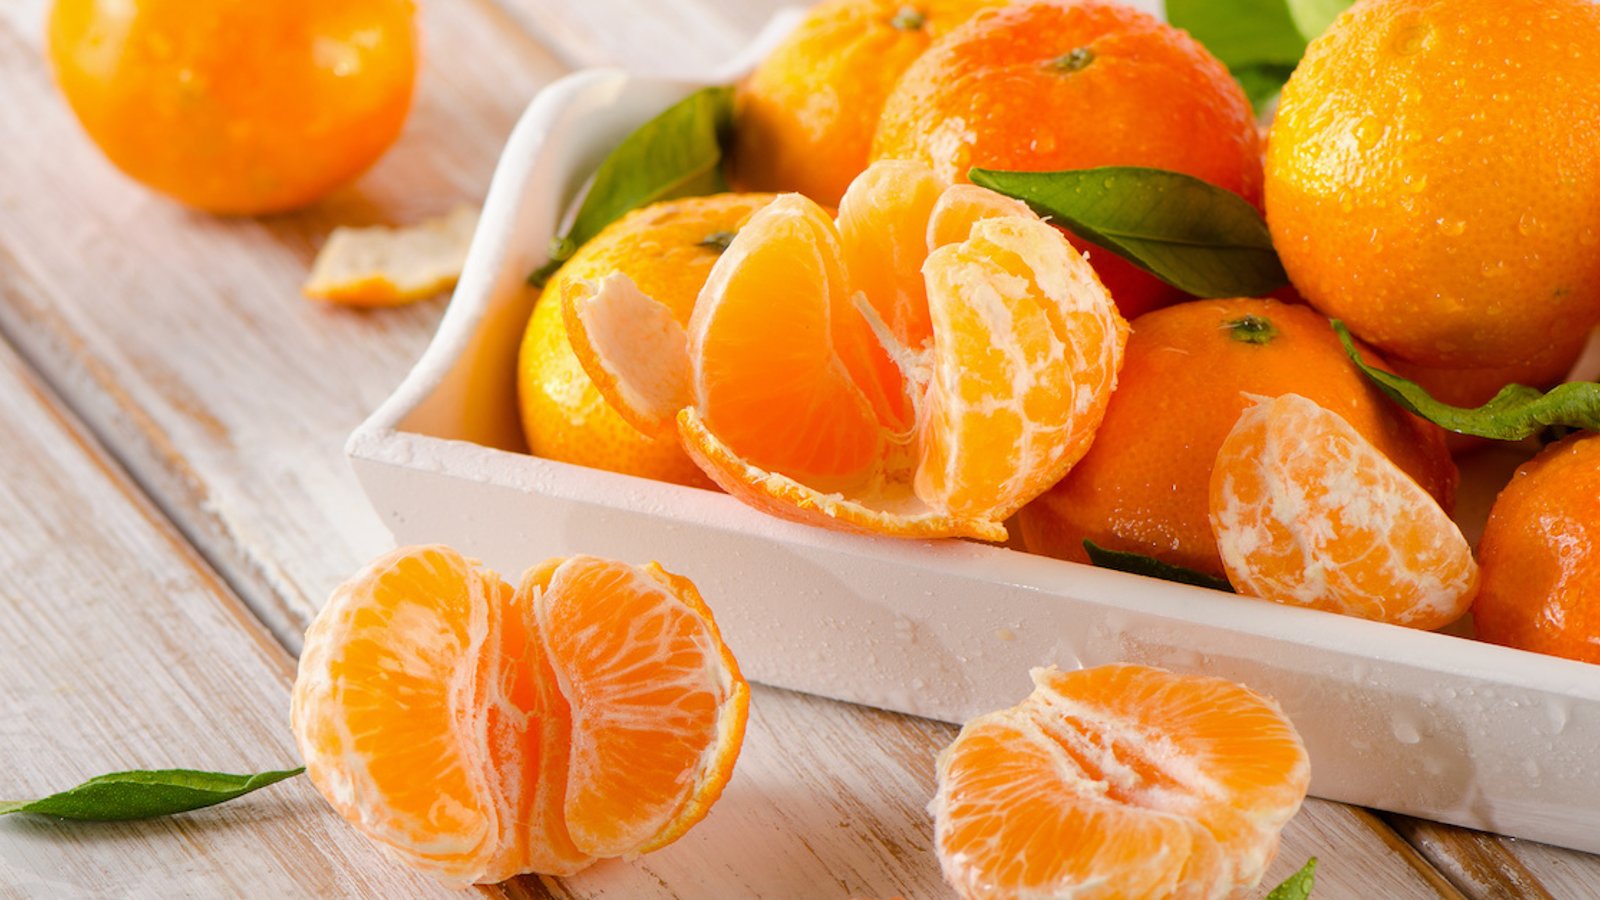 Des nutritionnistes affirment que les mandarines ont des bienfaits anti-âge incroyables!